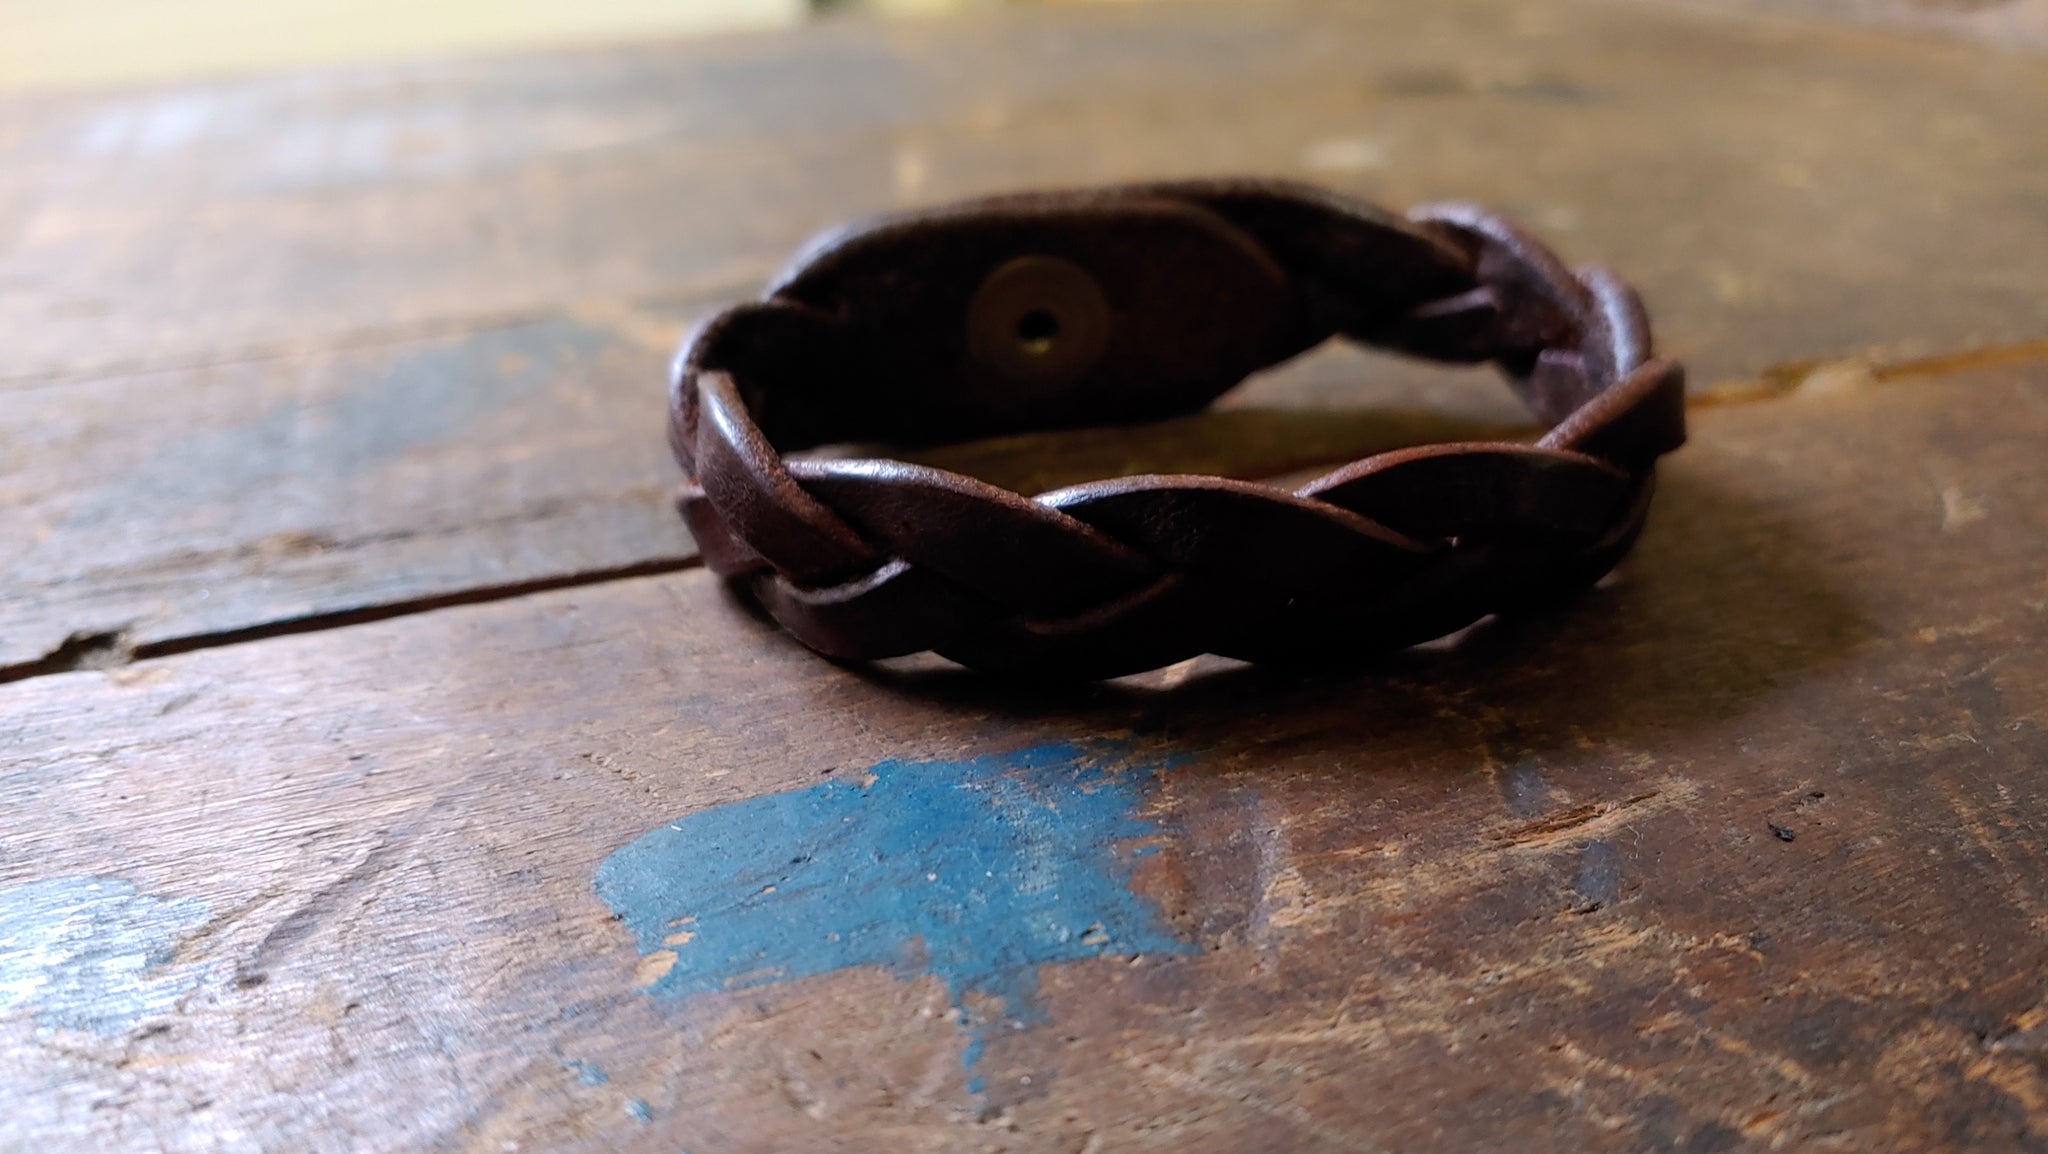 Bo Hand Braided Leather Mystery Bracelet - 6.5 WRIST SIZE - Trick Braid Bracelet, Cognac w/ Brass Snap